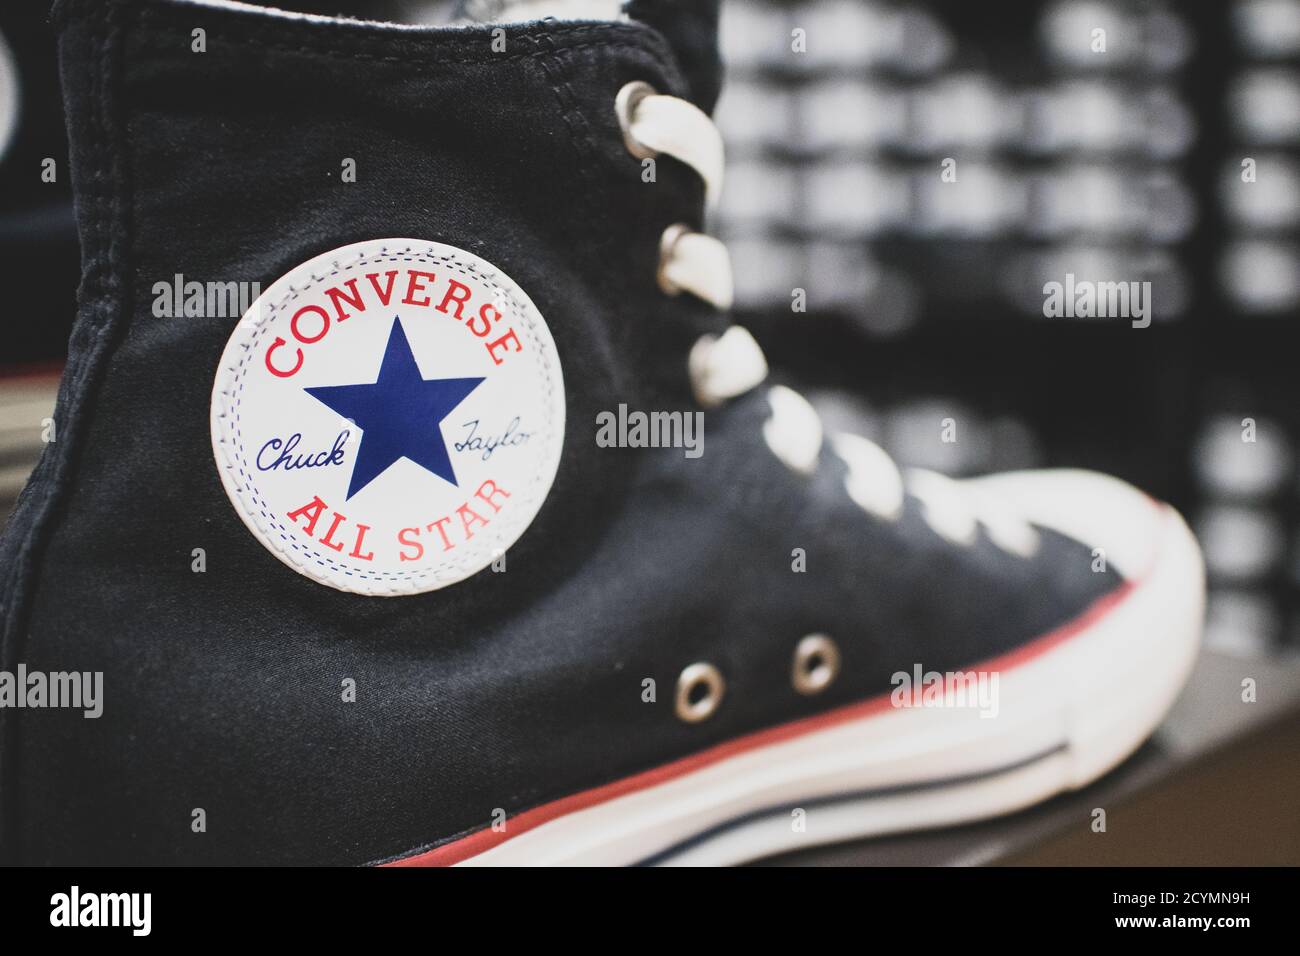 shoe company converse